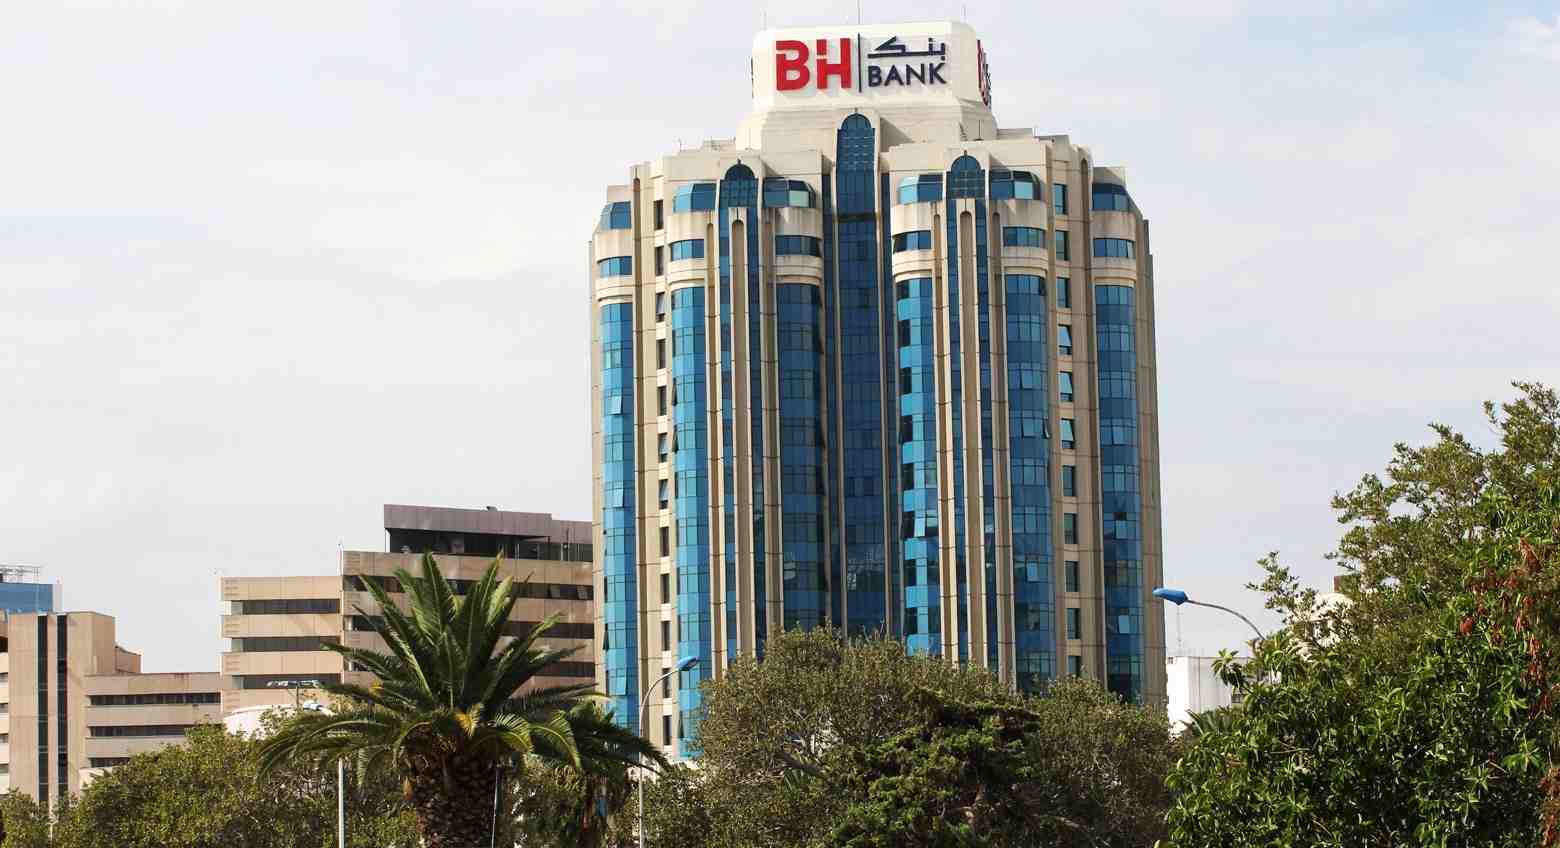 Résilience et stabilité : la BH Bank augmente son PNB à 166 MB au premier trimestre